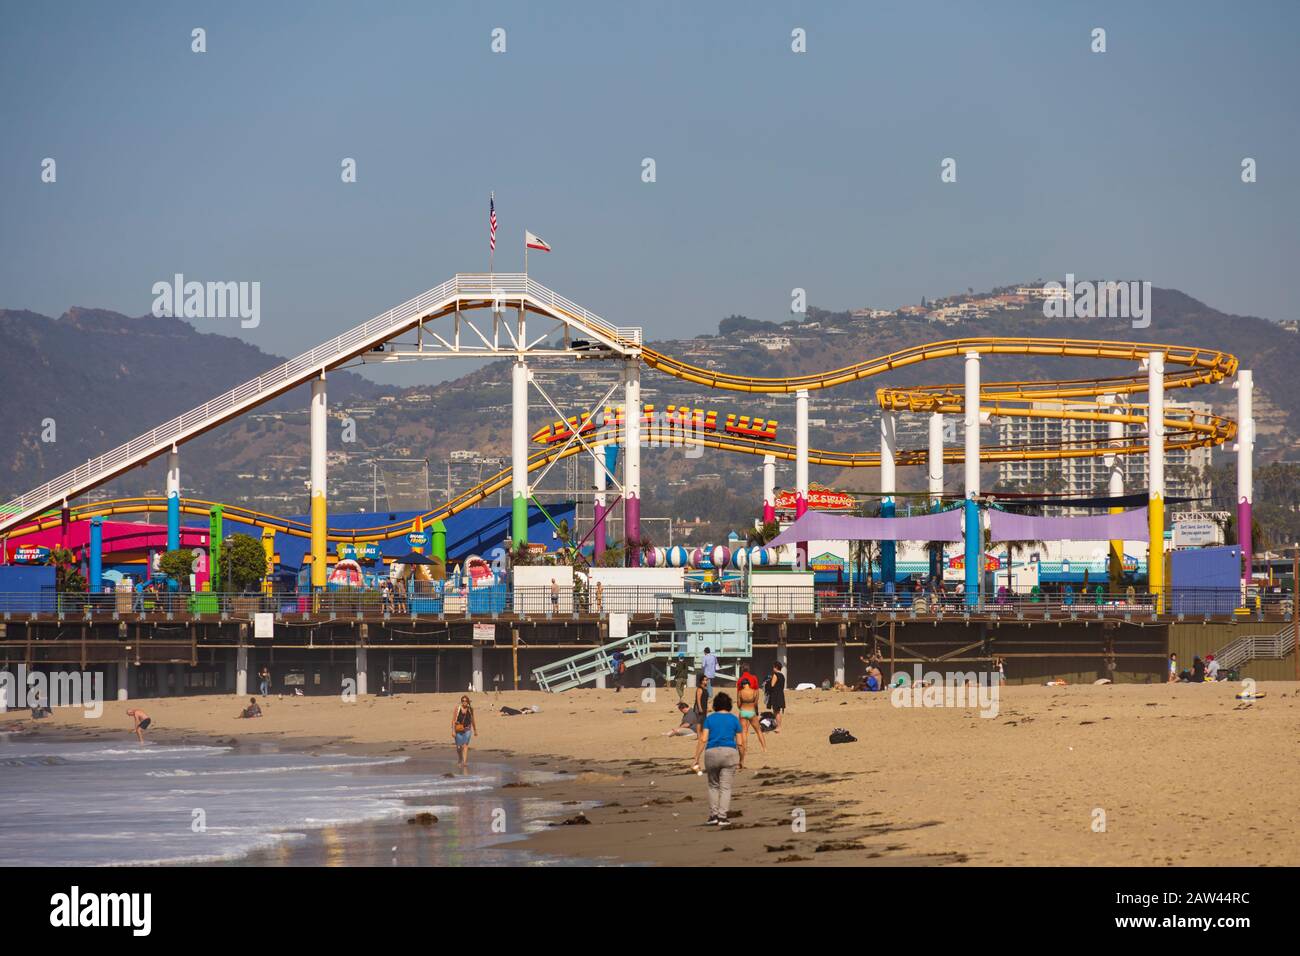 Paradise Park Vergnügungen am Santa Monica Pier, Los Angeles, Kalifornien, Vereinigte Staaten von Amerika. USA. Oktober 2019 Stockfoto